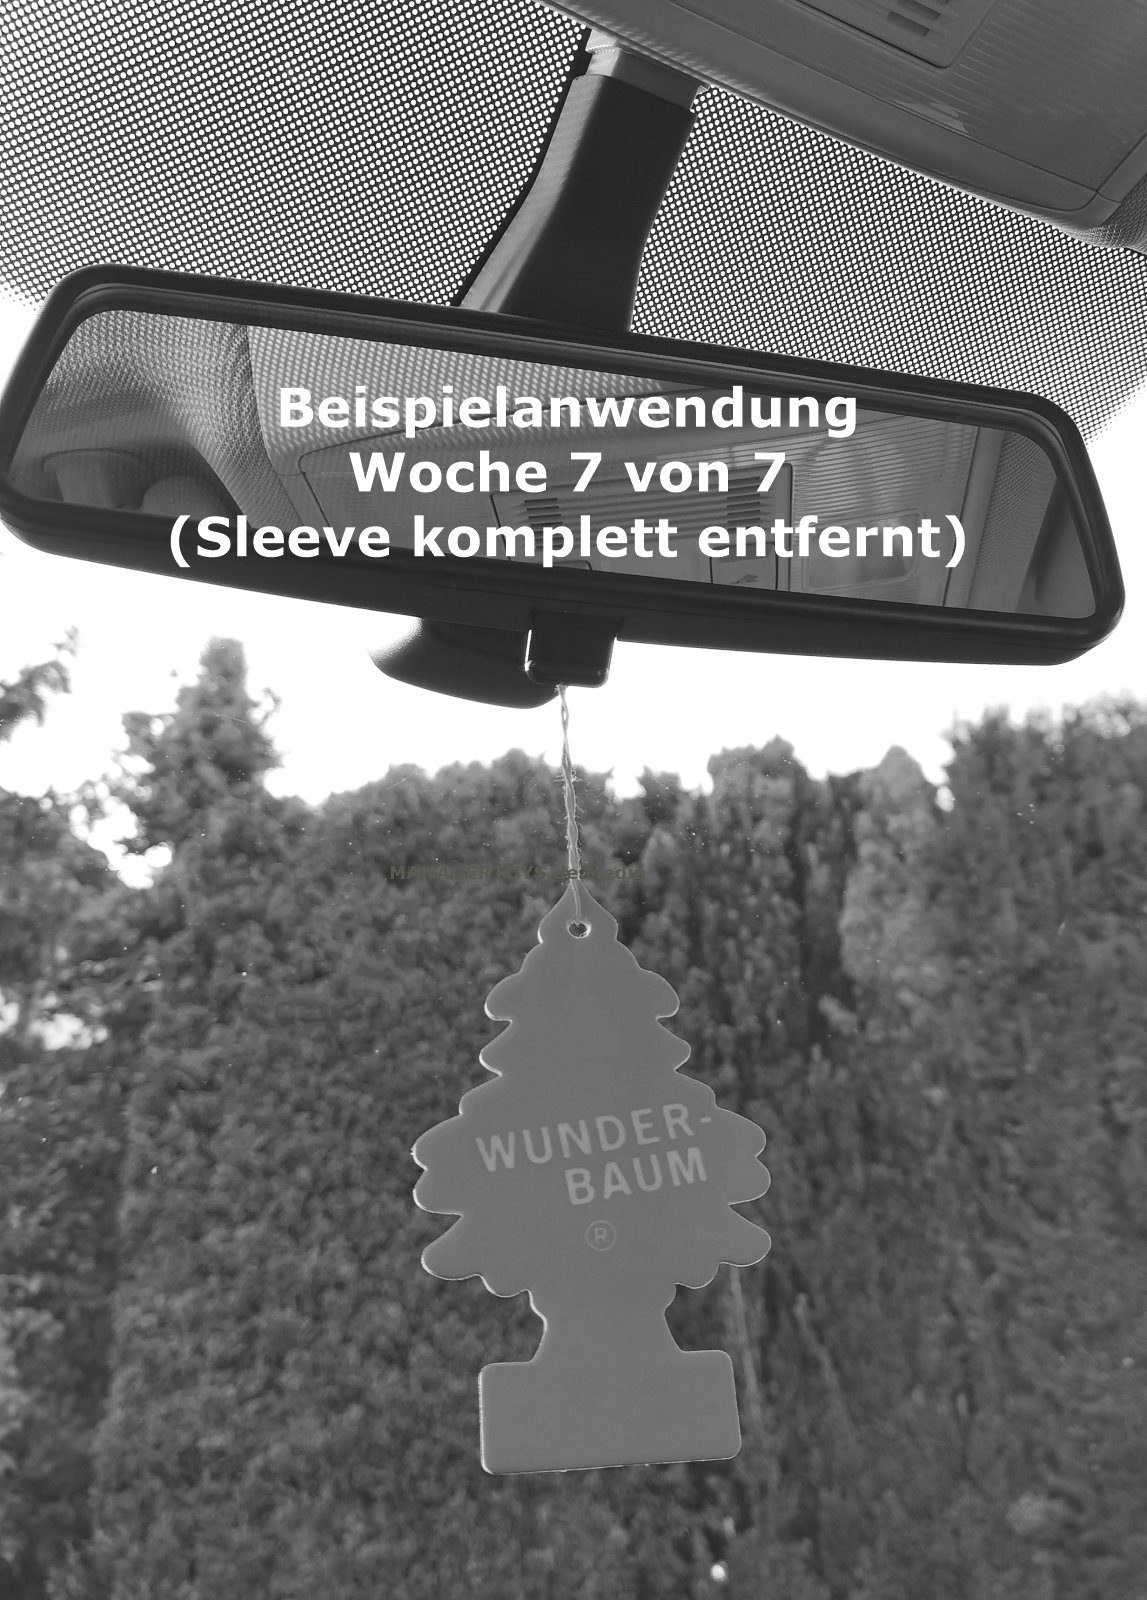 Neuwagen Car Duftbäumchen Set Hänge-Weihnachtsbaum New Lufterfrischer Wunderbaum 3 3er Wunder-Baum